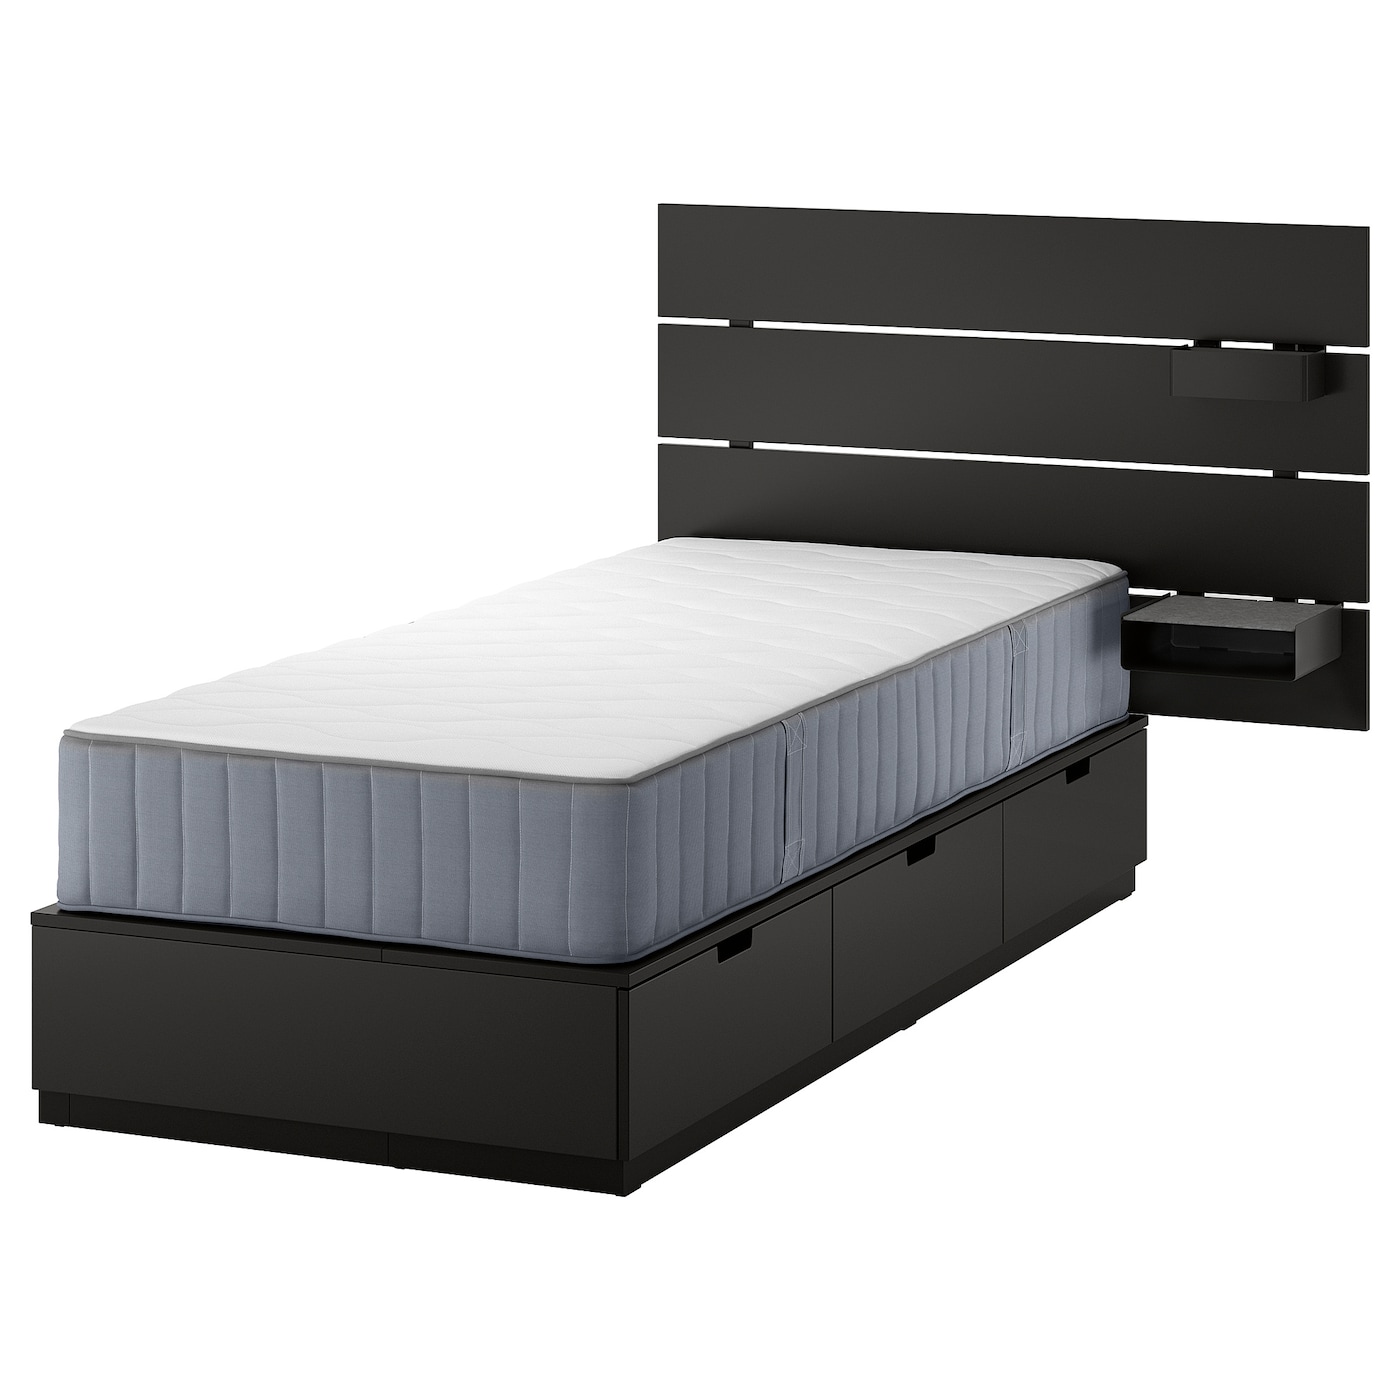 Каркас кровати с контейнером и матрасом - IKEA NORDLI, 200х90 см, матрас средне-жесткий, черный, НОРДЛИ ИКЕА